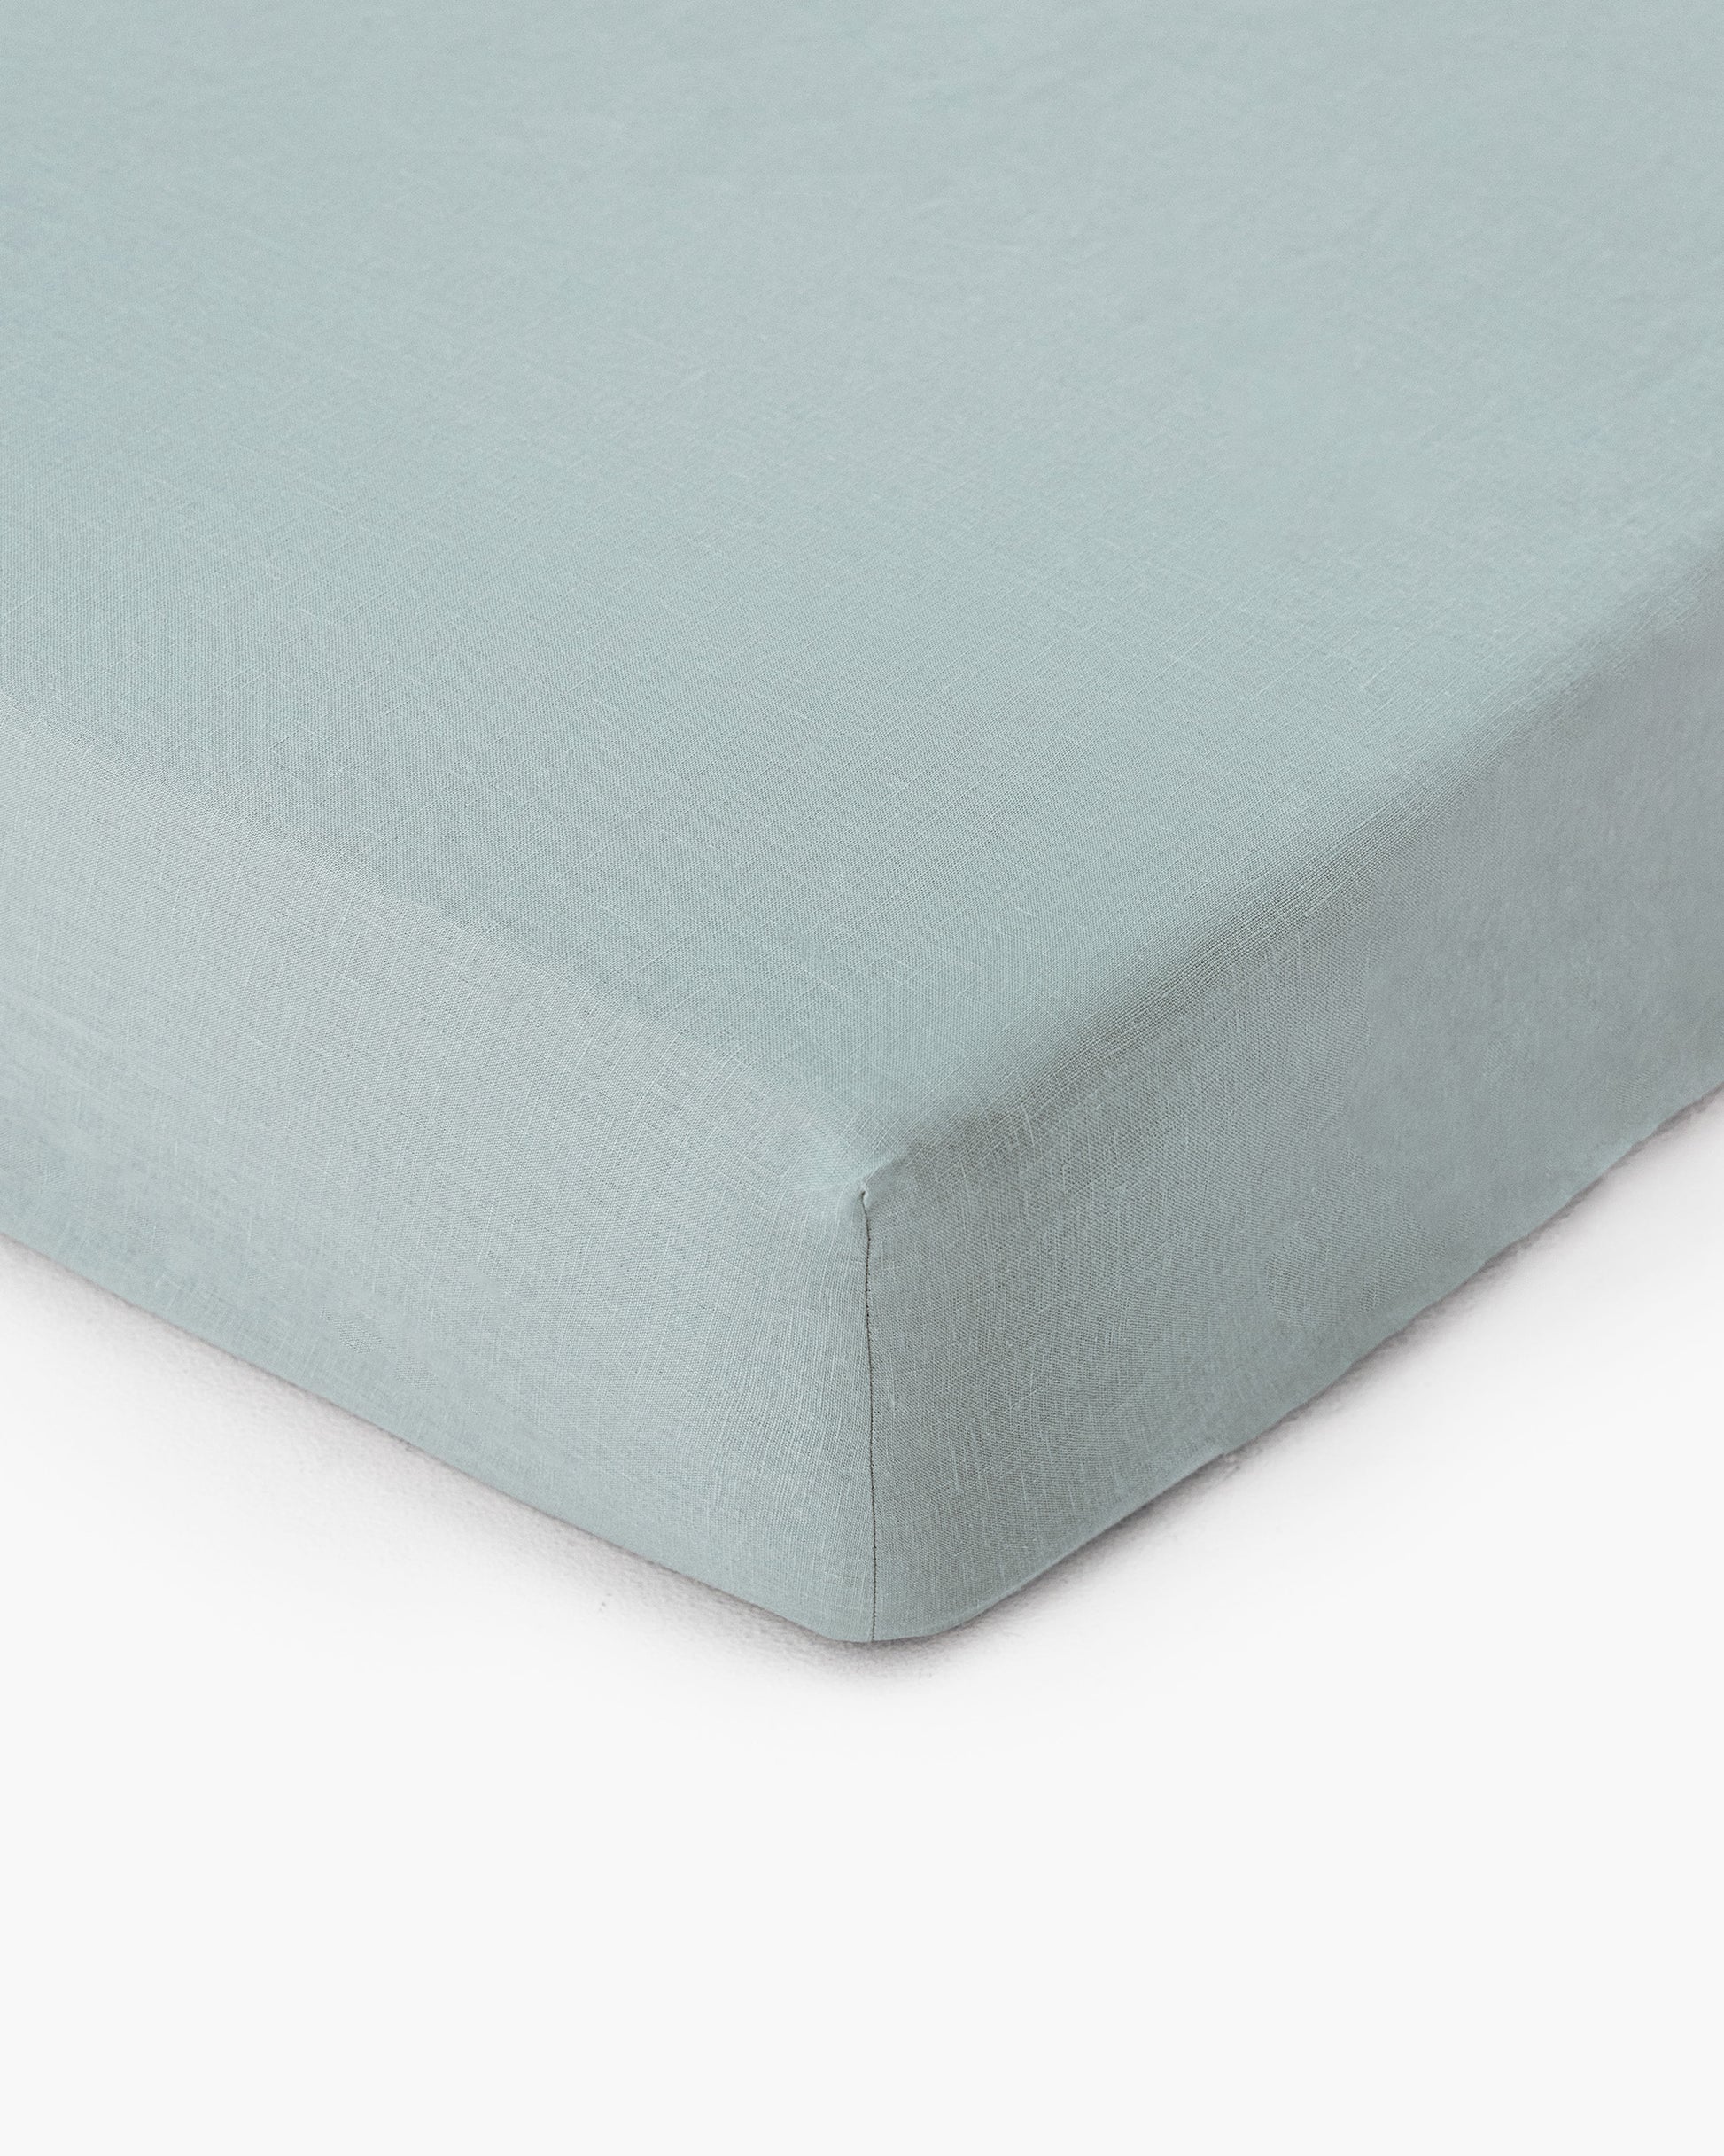 Dusty blue linen fitted sheet - MagicLinen